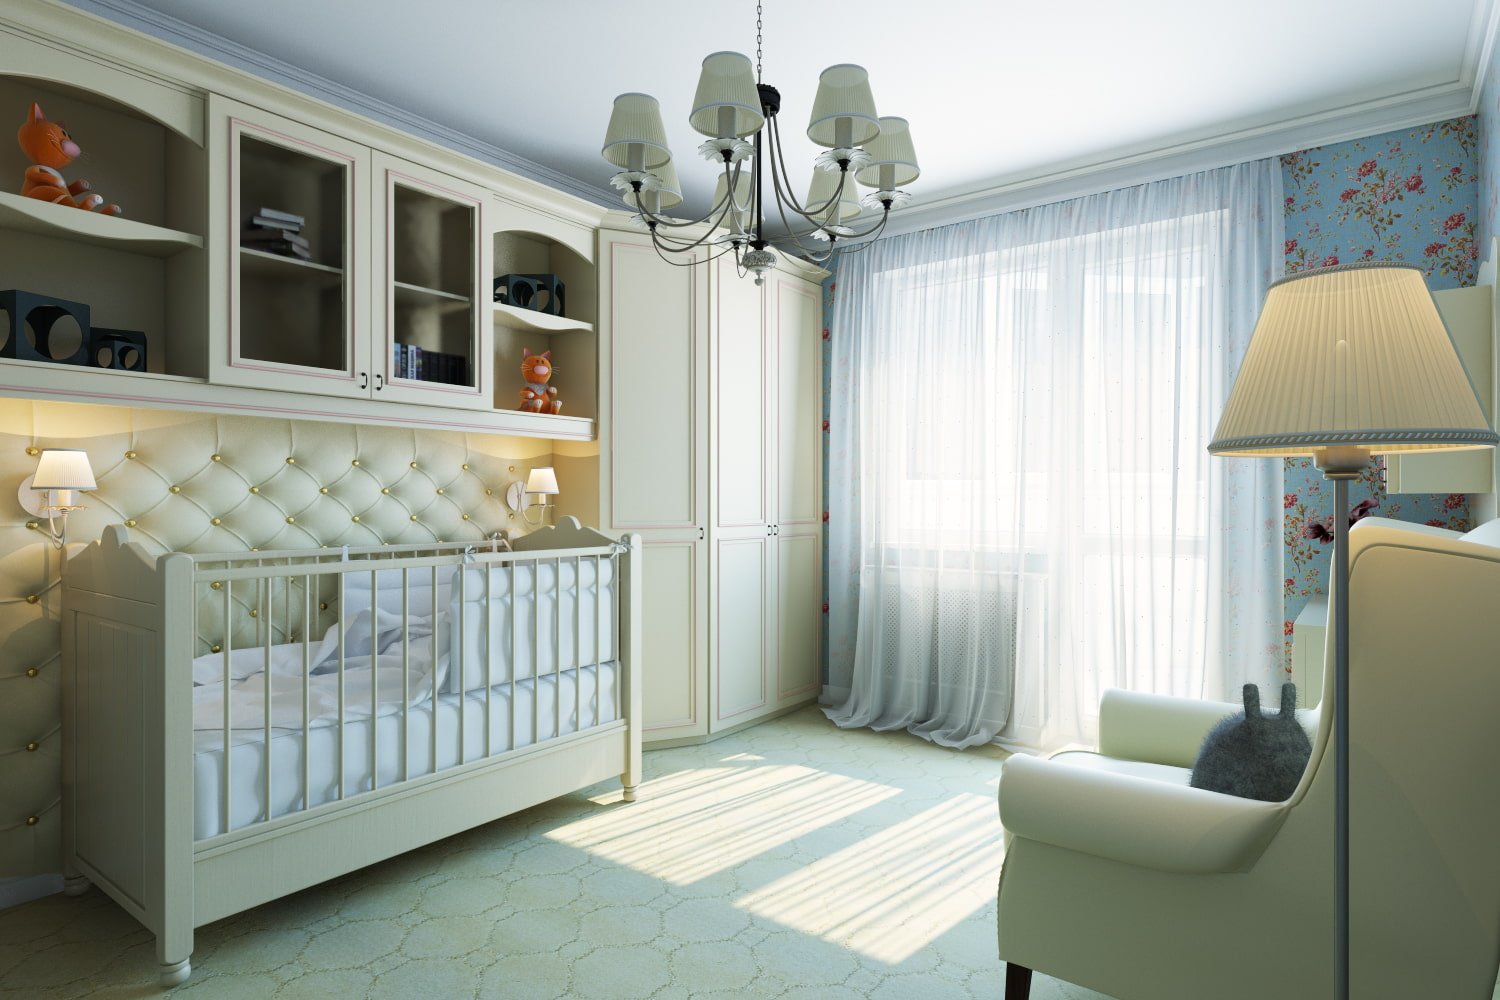 Планировка однокомнатной квартиры с детской кроваткой (35 фото)